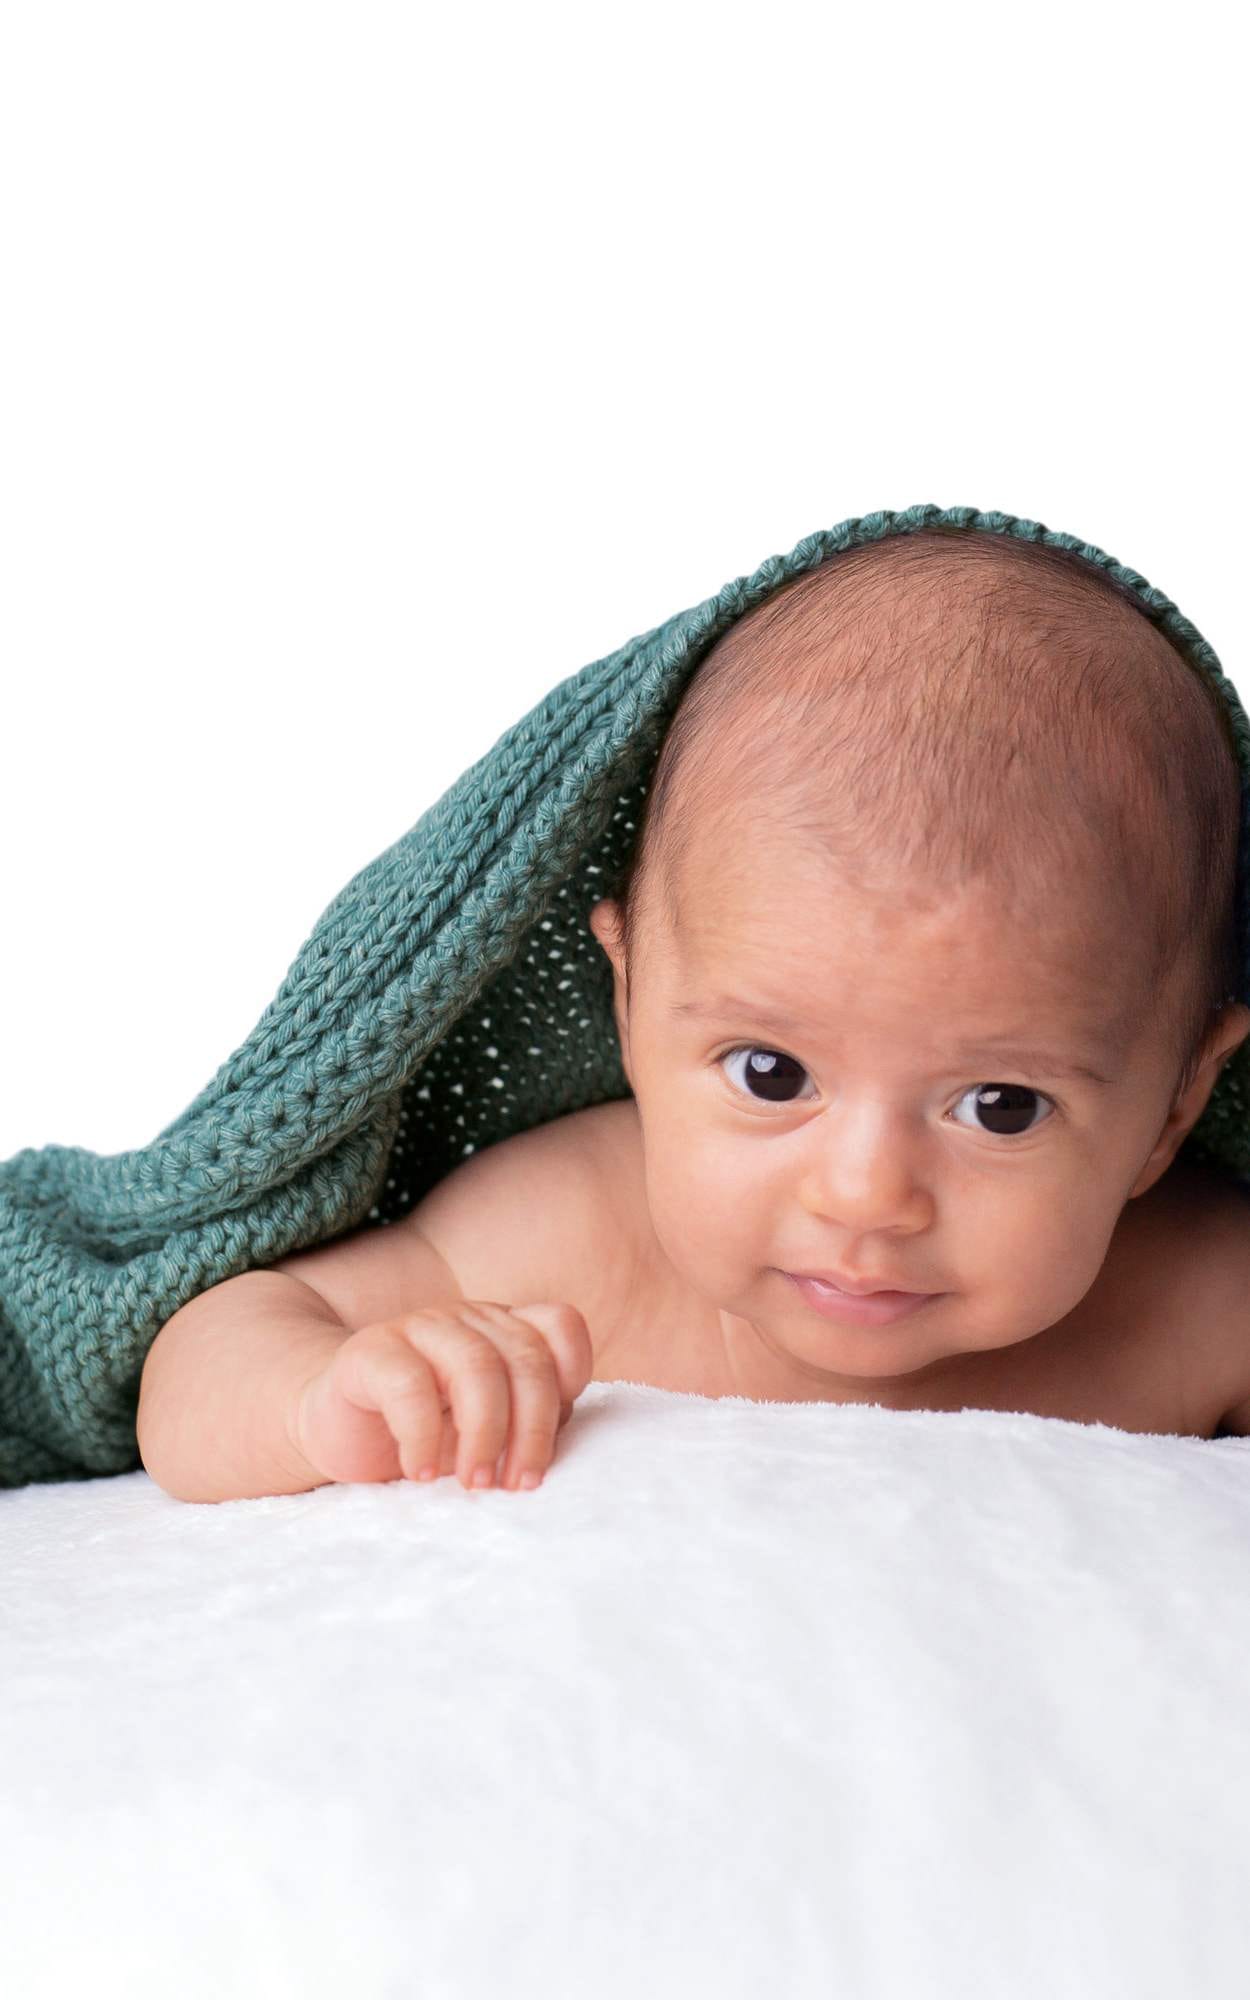 Baby Decke mit Sternmuster - Strickset von LANA GROSSA jetzt online kaufen bei OONIQUE